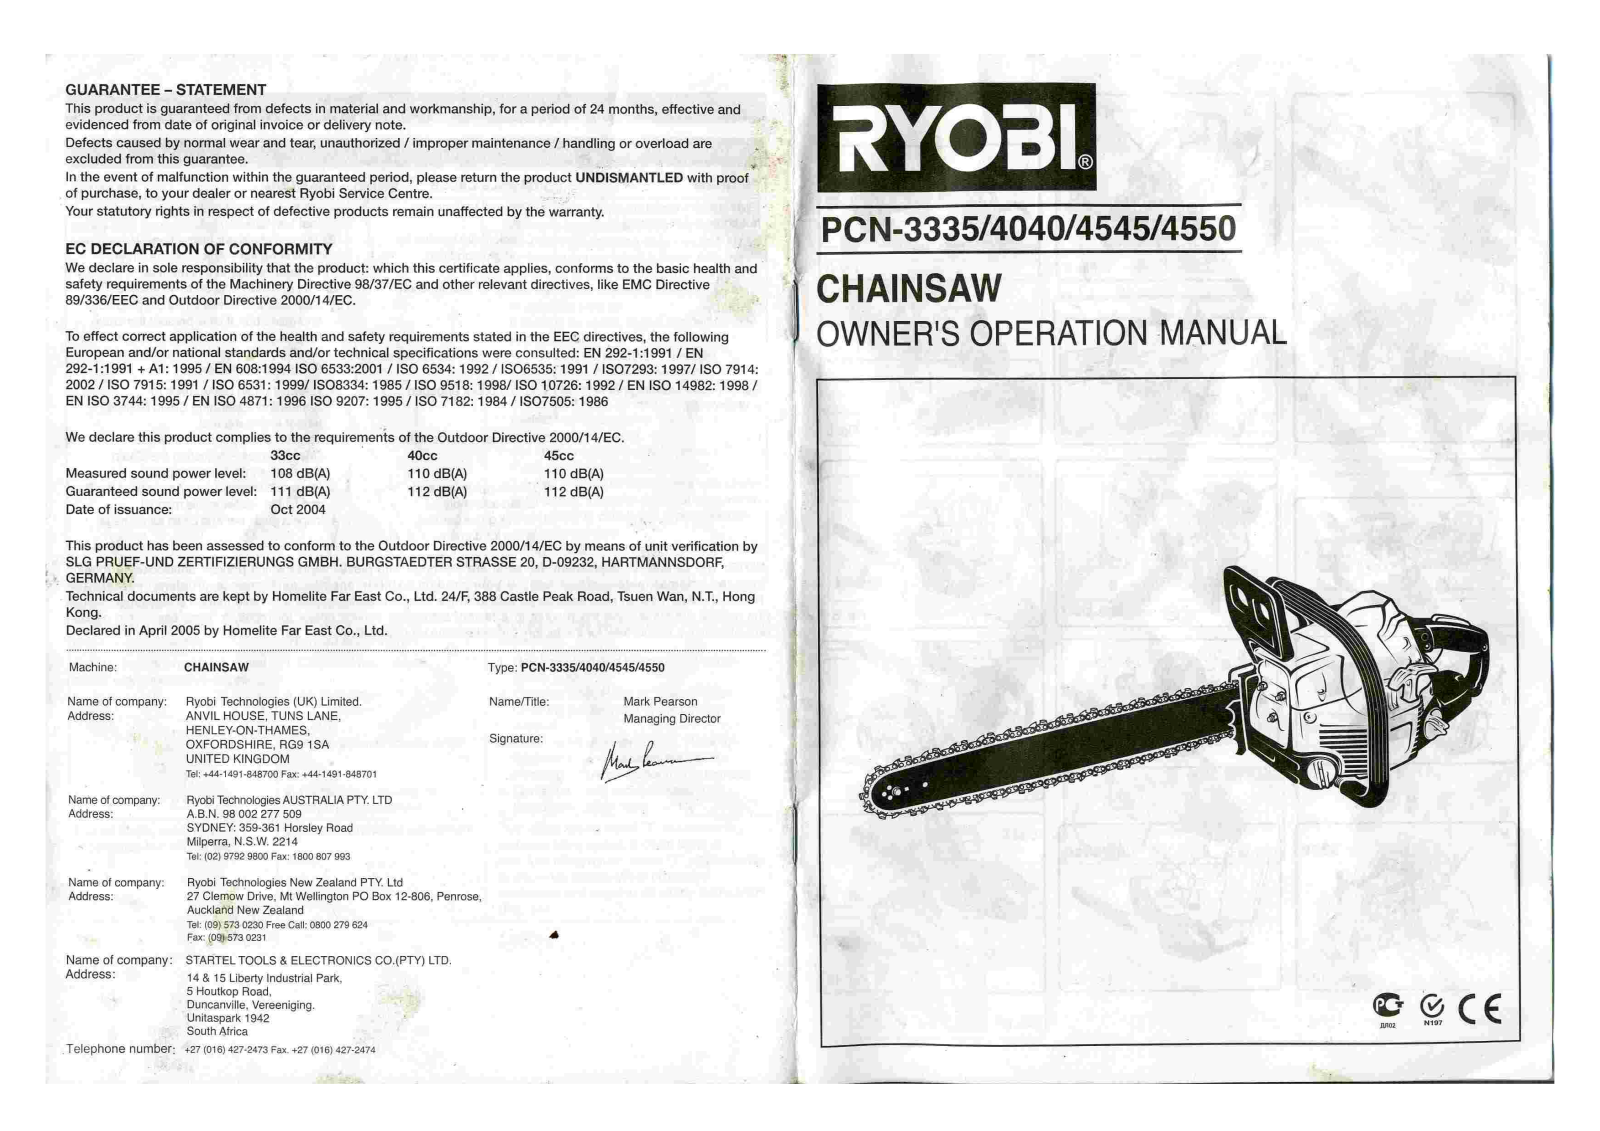 Ryobi PCN-4040, PCN-3335, PCN-4545, PCN-4550 Manual